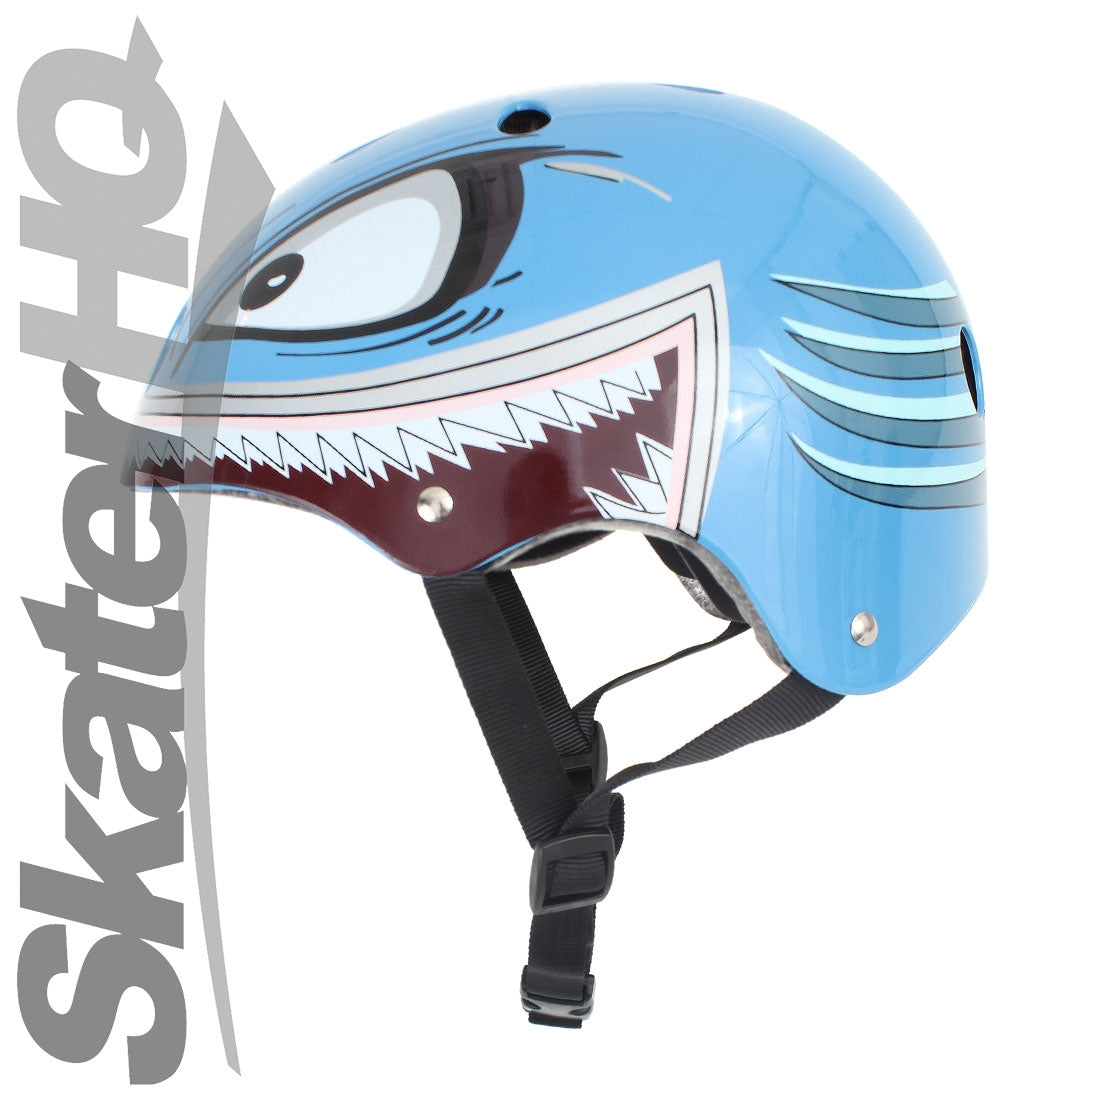 Hornit Lids Hammerhead Helmet - Medium Helmets